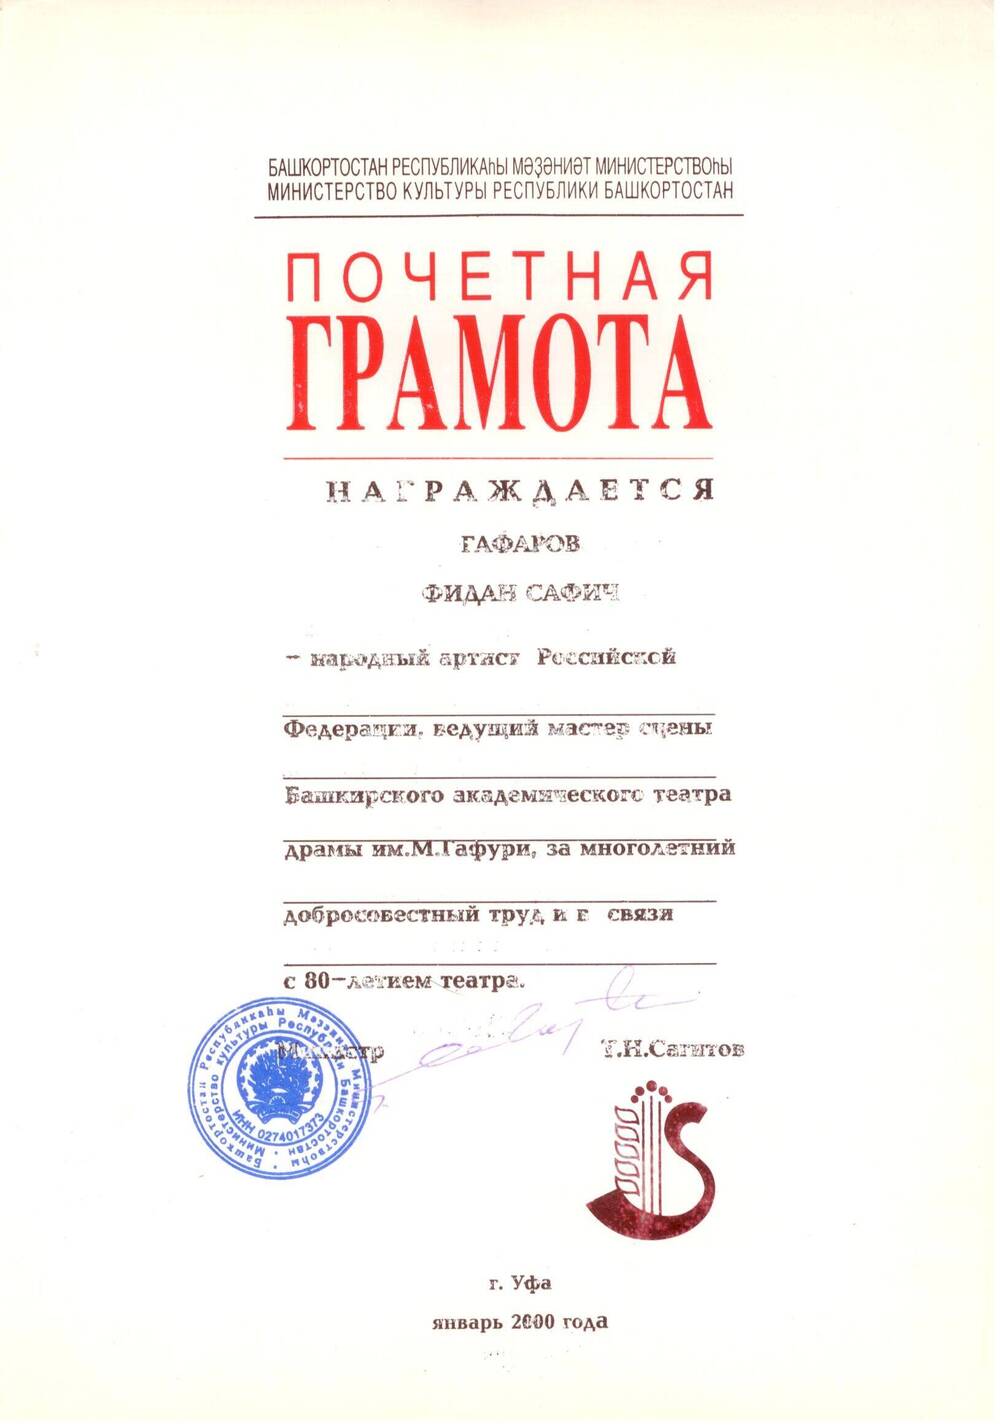 Почетная грамота Ф. Гафарова театра г. Уфа, 2000 г.